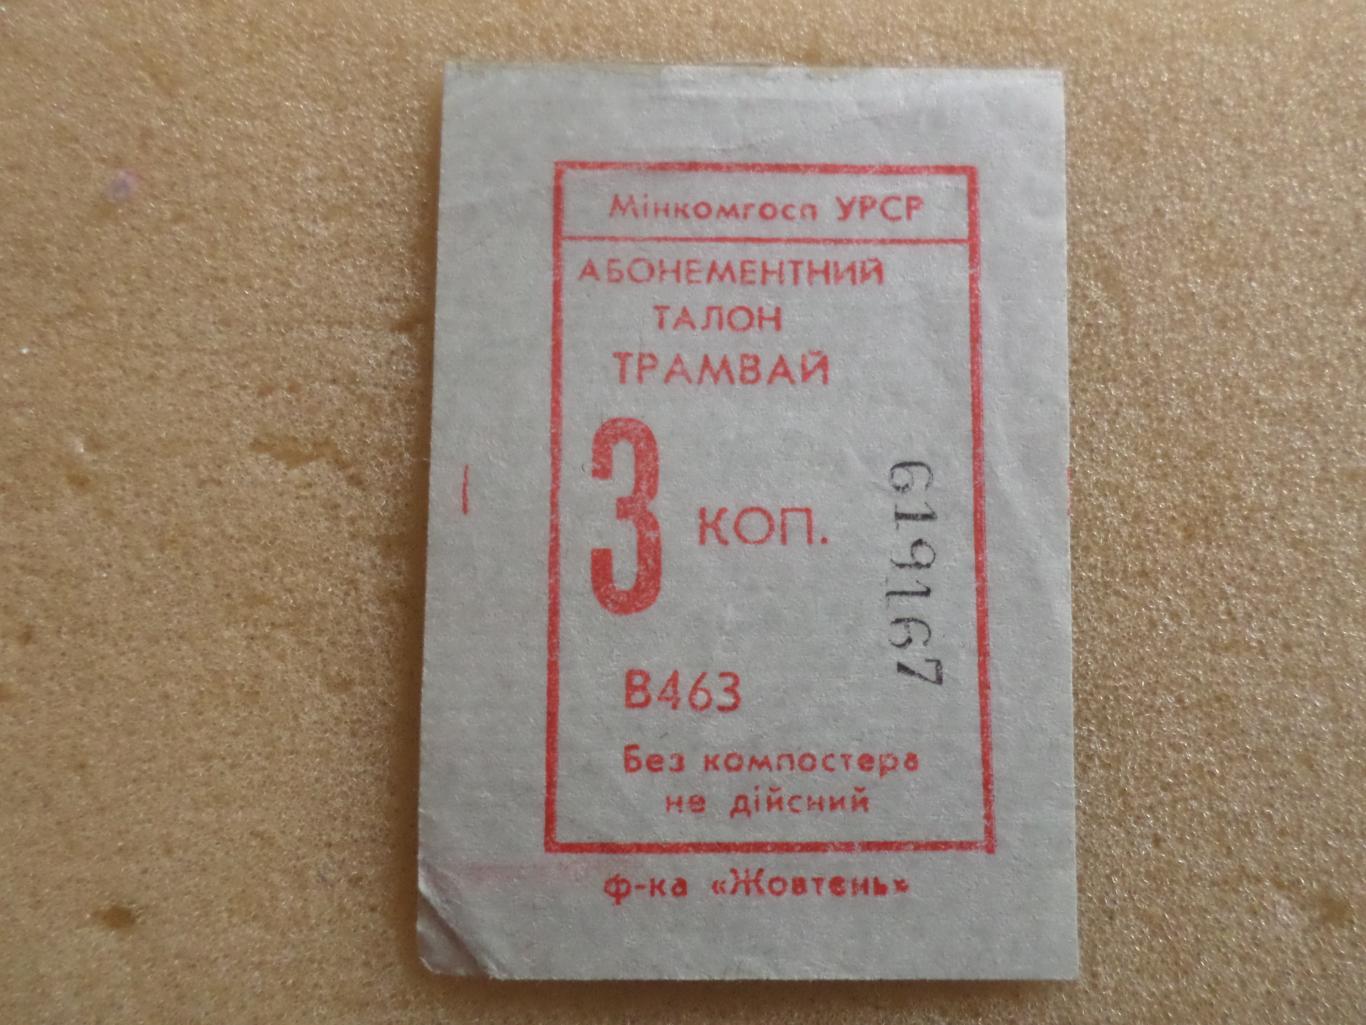 Билет ( талон) на трамвай г. Харьков